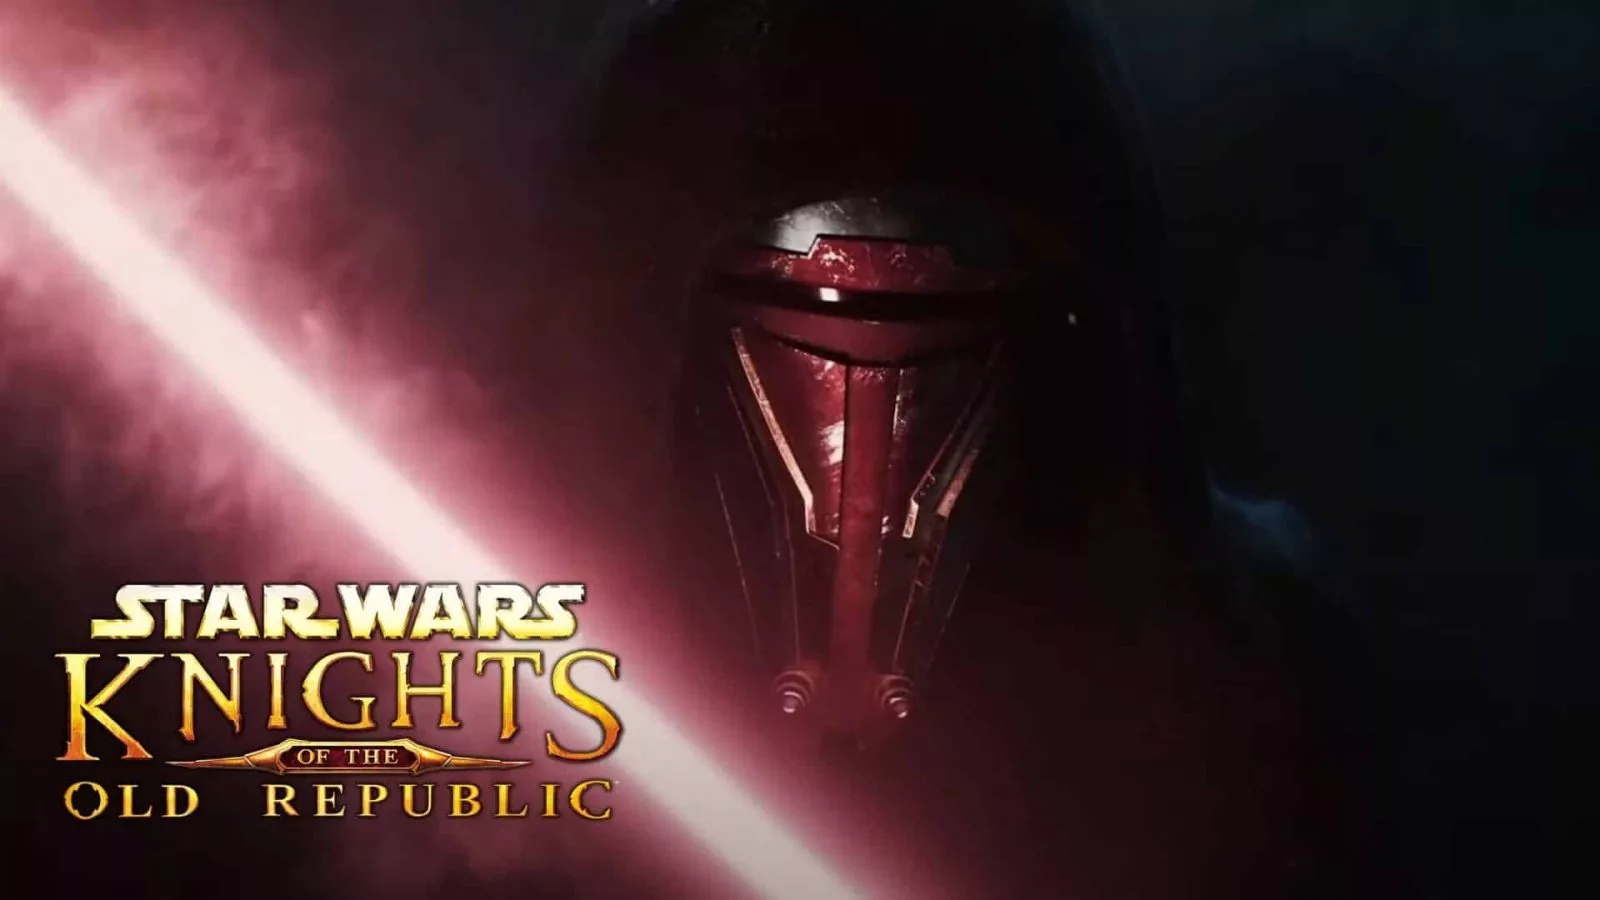 نسخه جدیدی از بازیStar Wars: Knights Of The Old Republic در حال تولید است